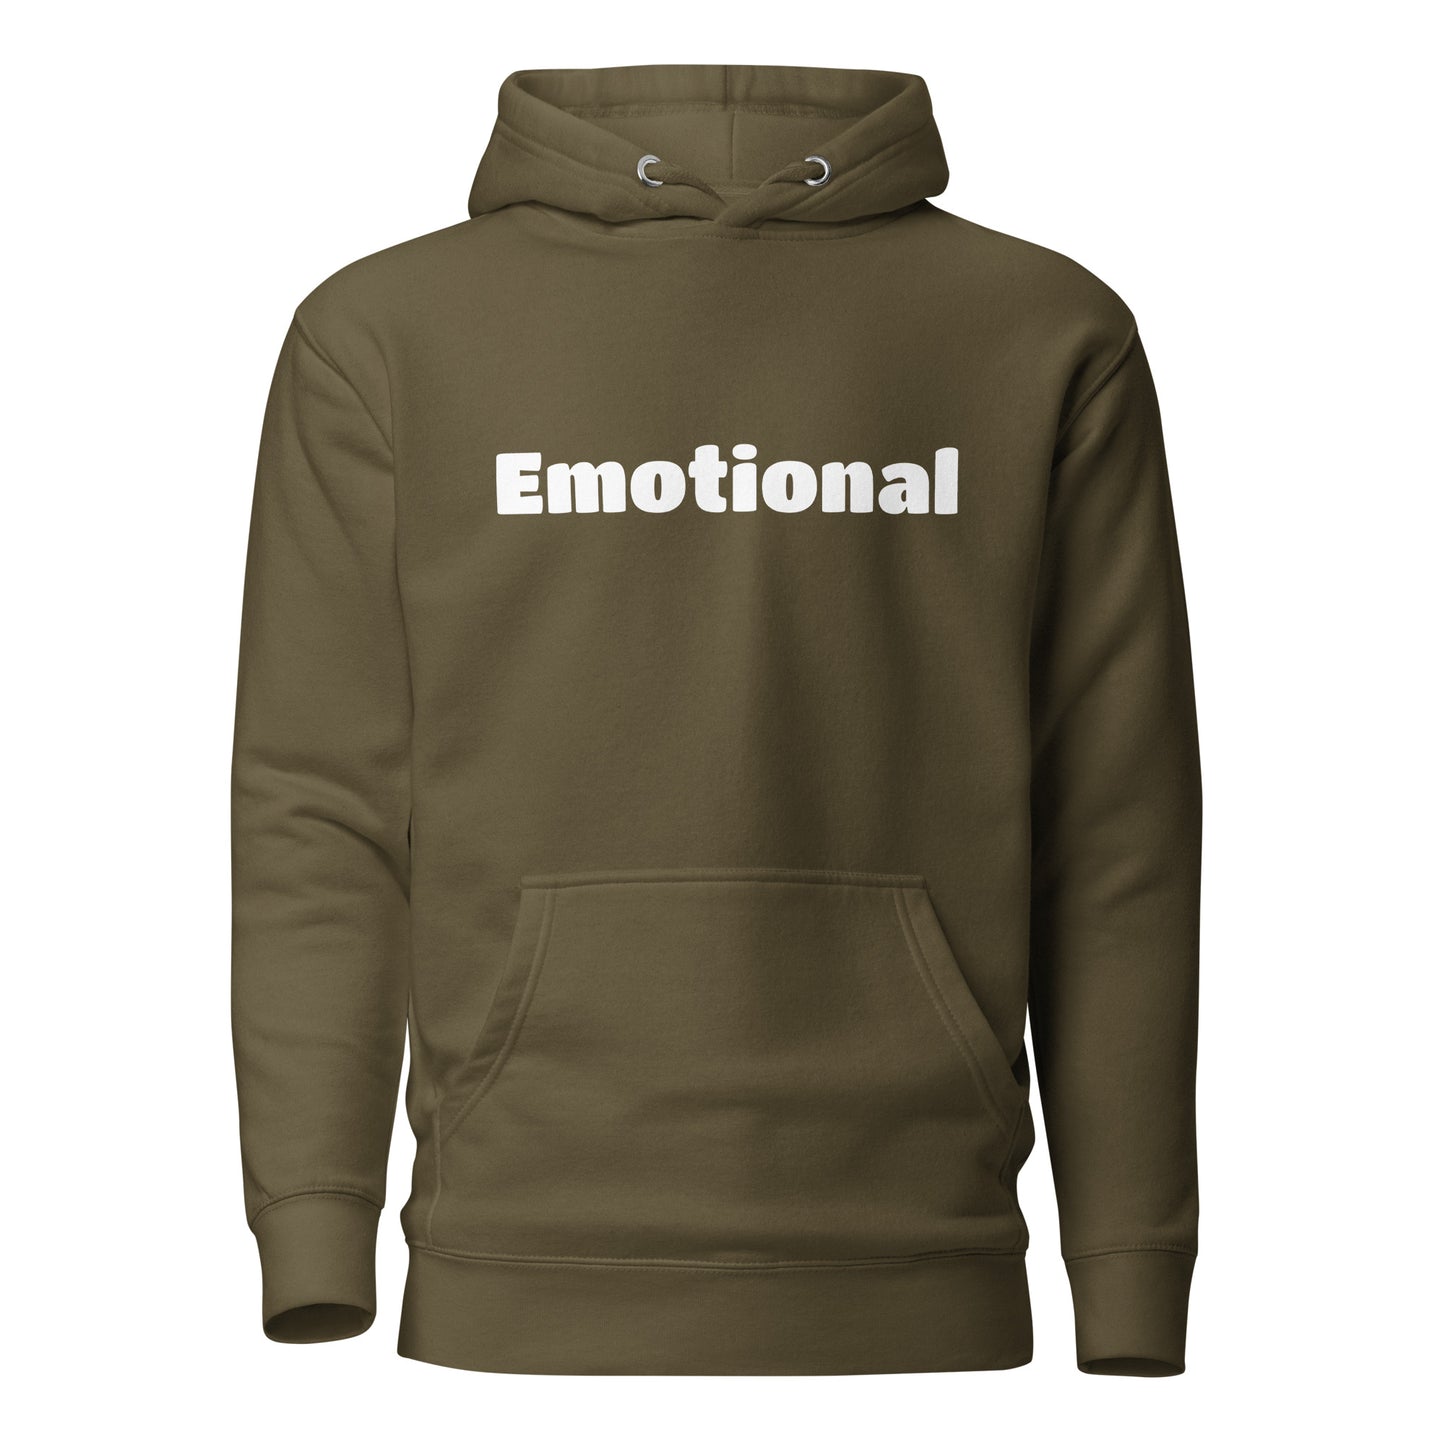 "Emotional" Hoodie